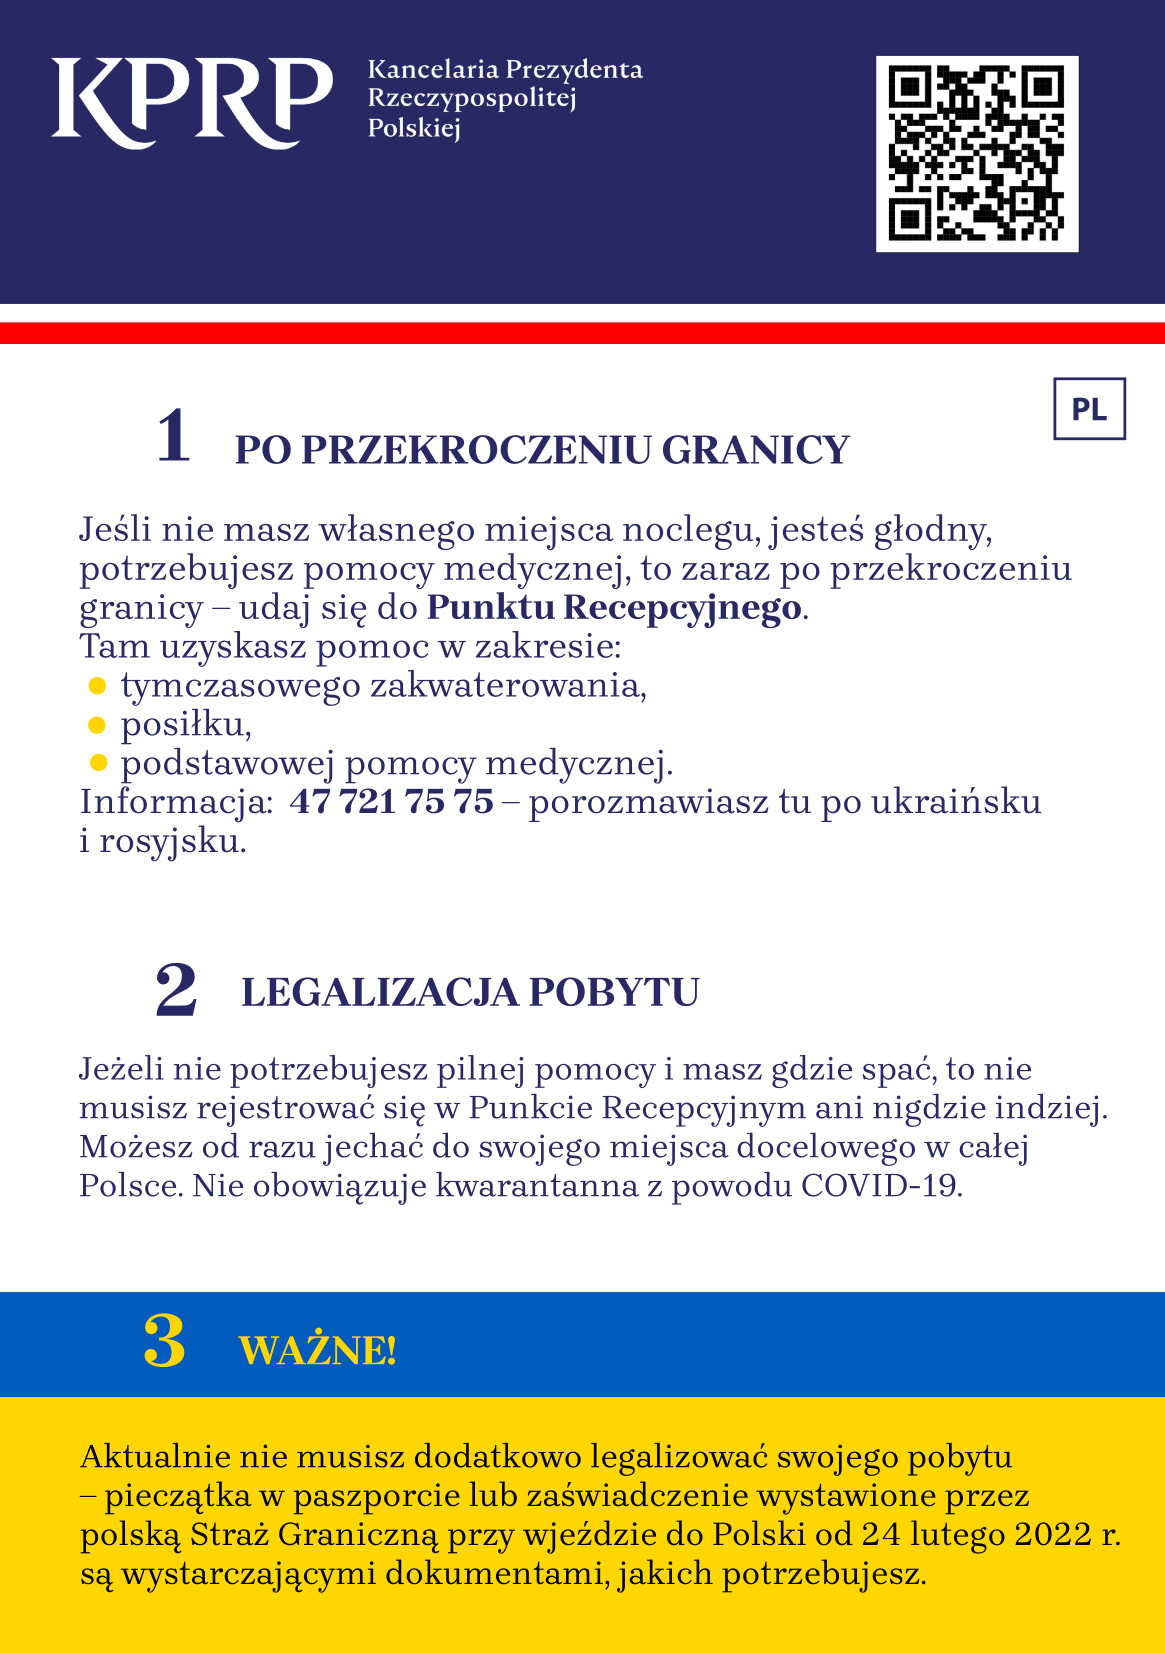 Strona pierwsza ulotki w języku polskim